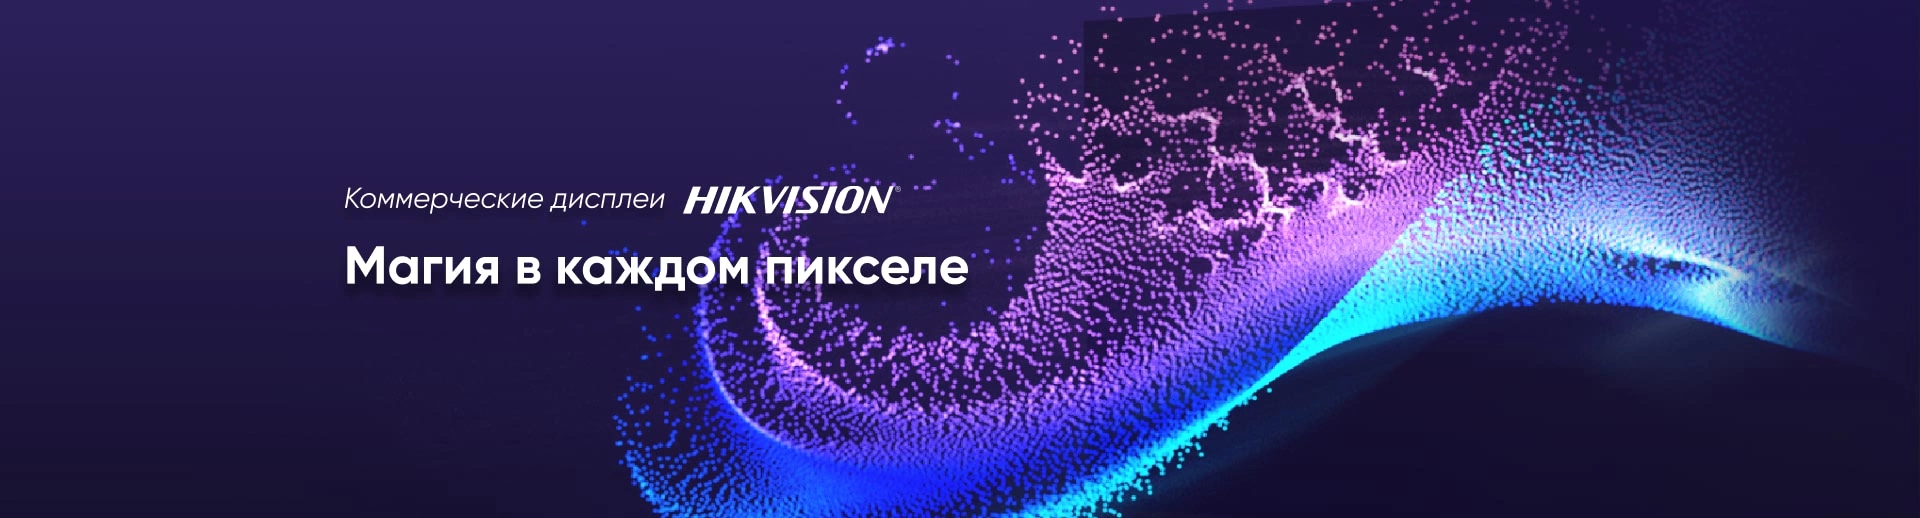 Коммерческие дисплеи Hikvision